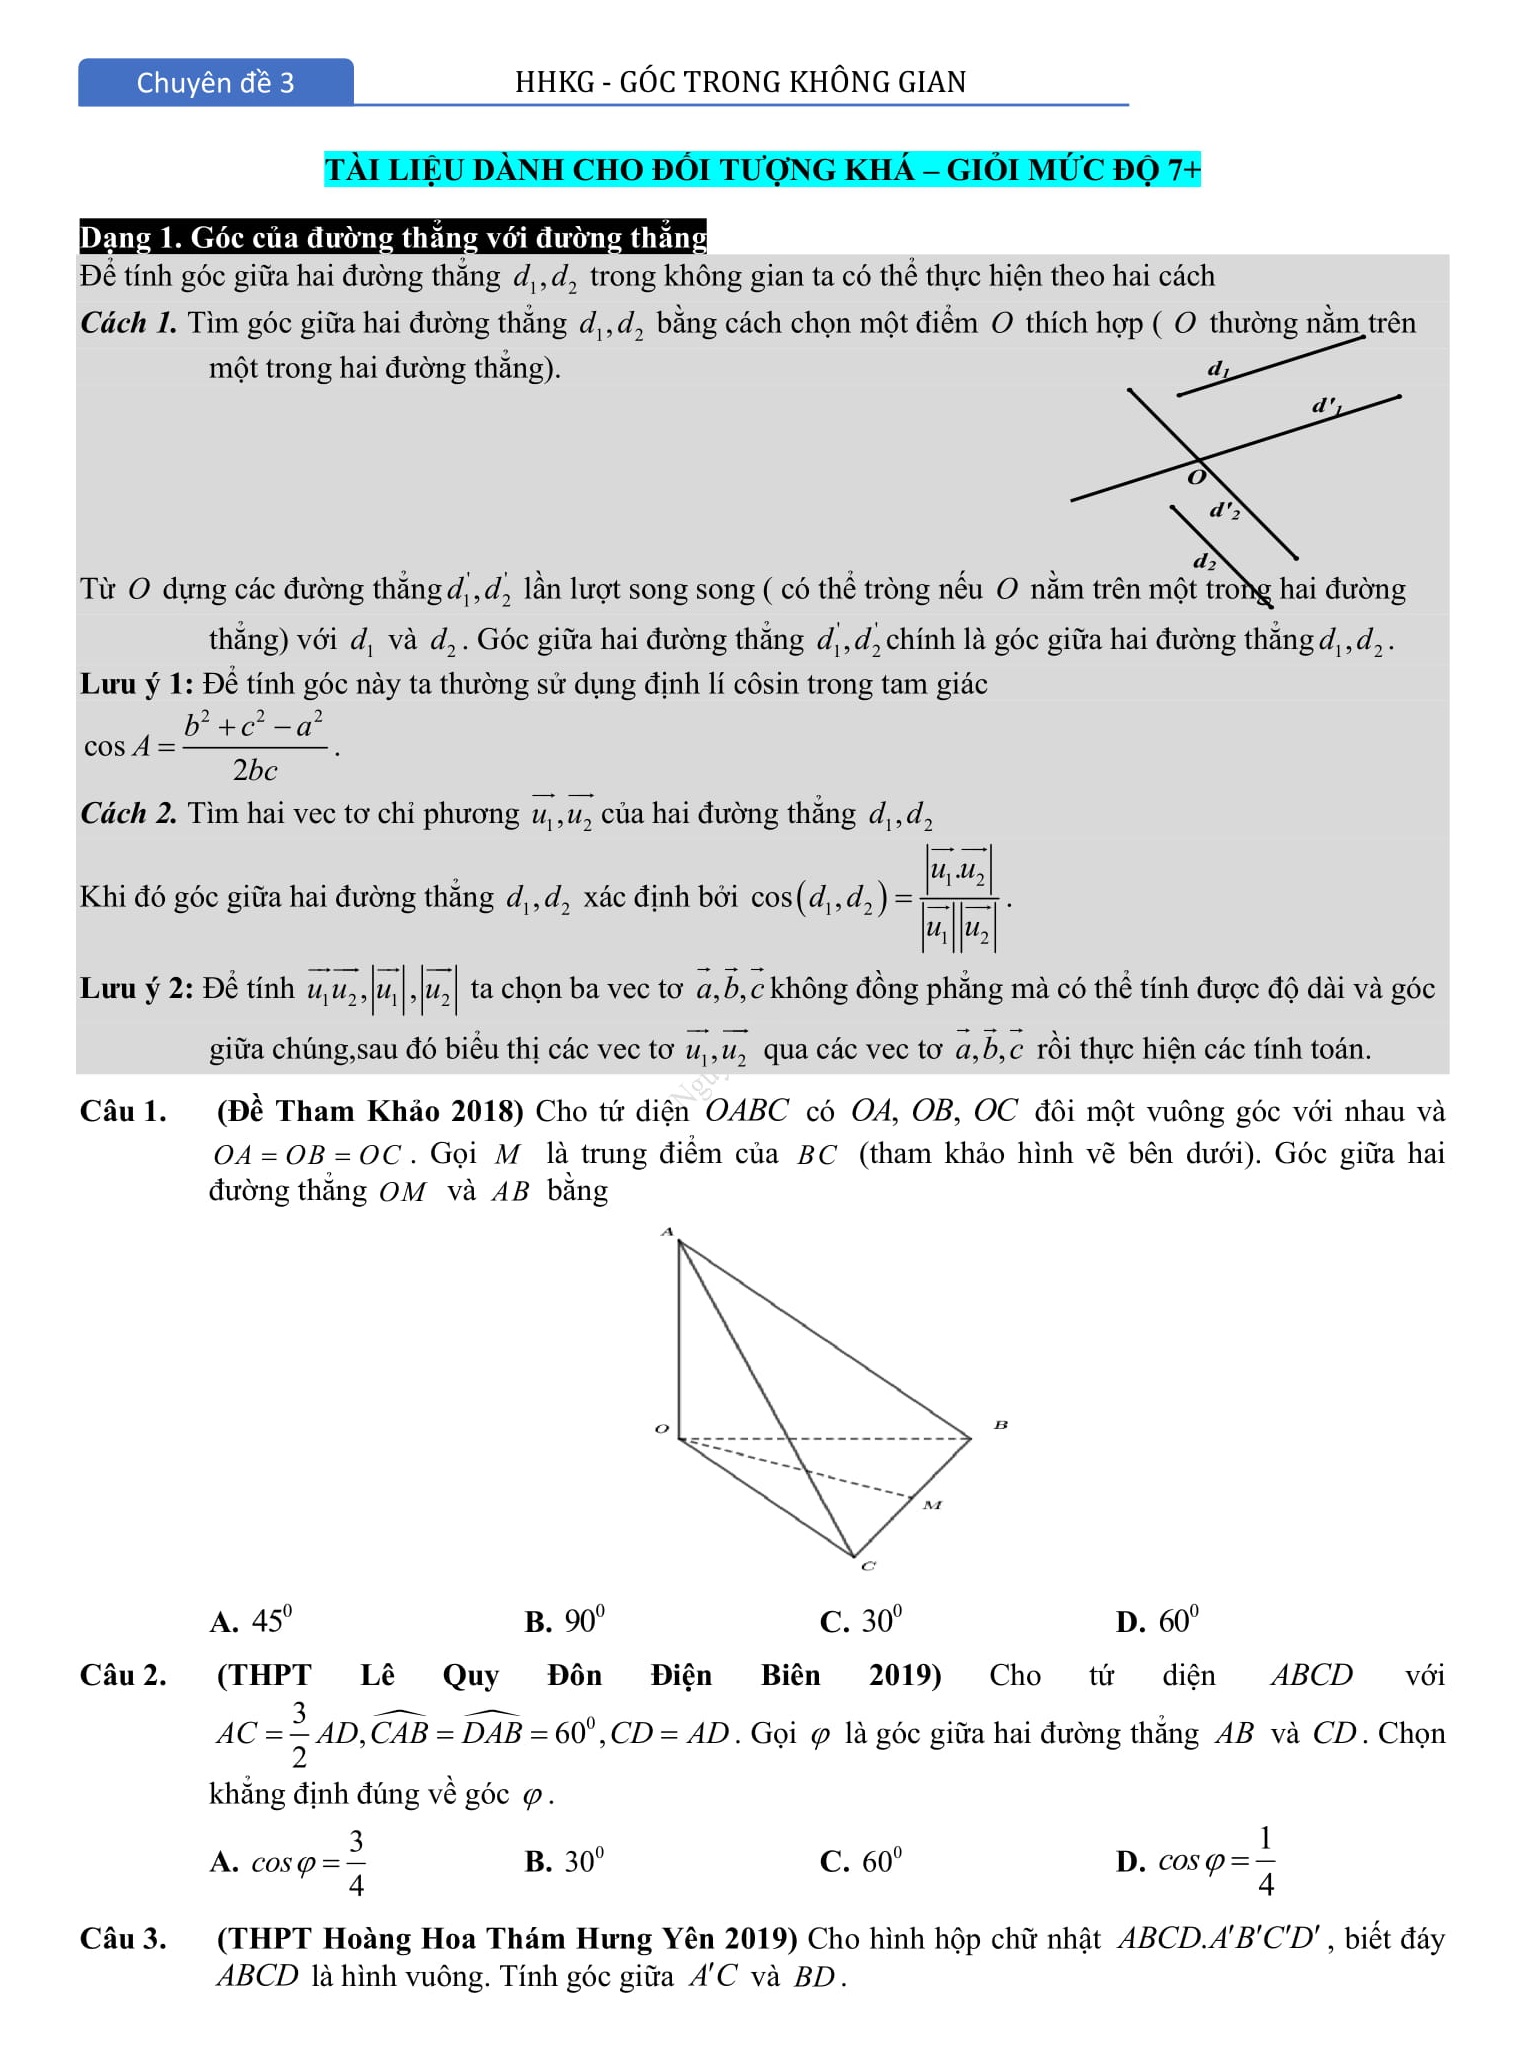 Chuyên đề Toán 12 -  Góc và khoảng cách hình học trong không gian